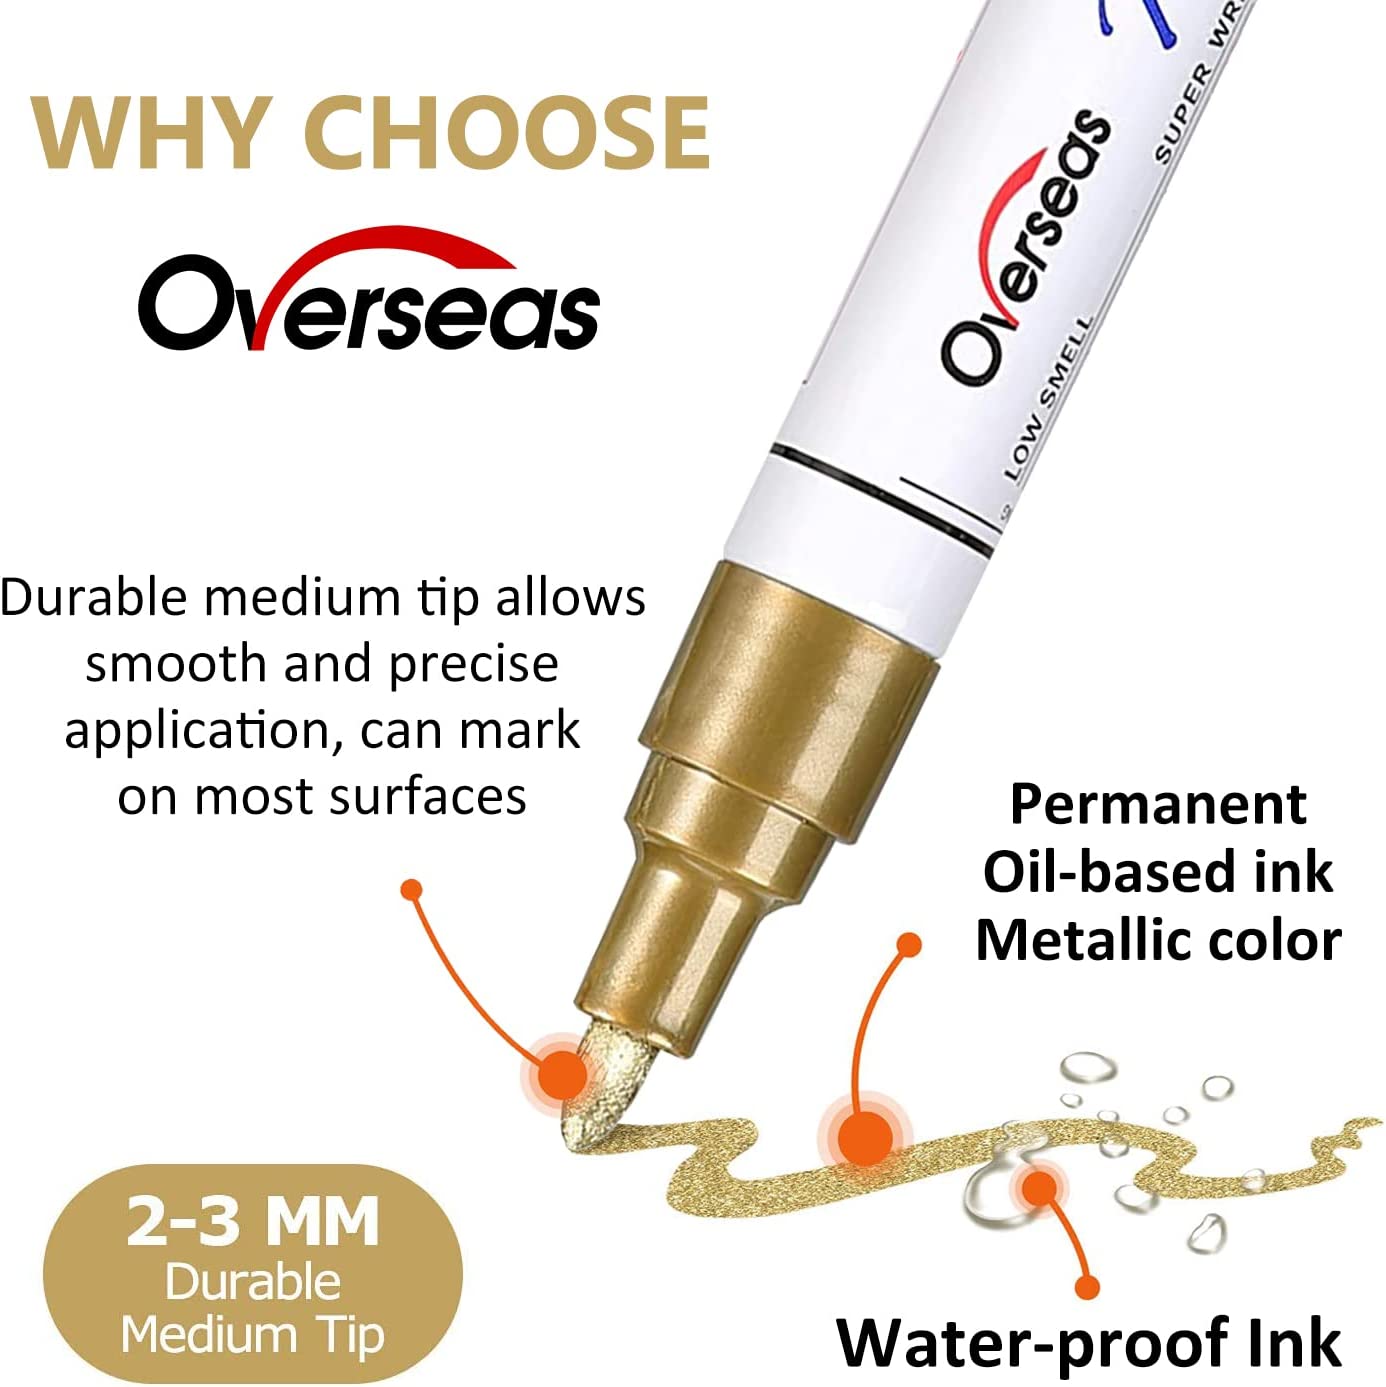 Overseas Paint Marker Pens used